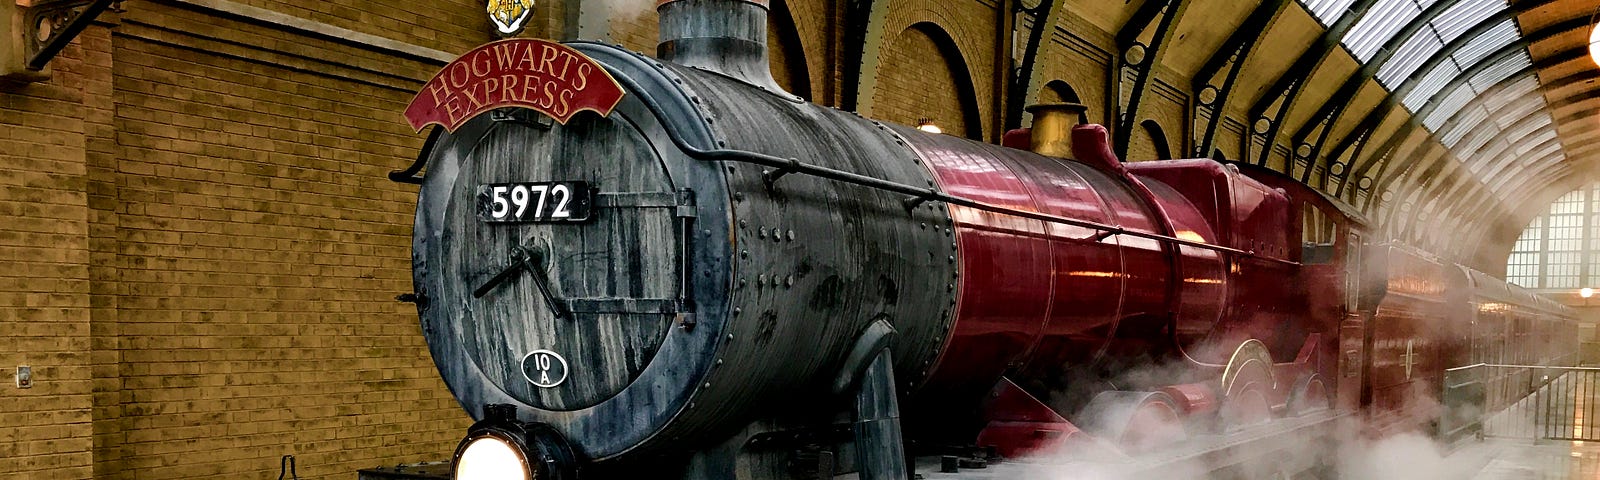 Hogwarts express